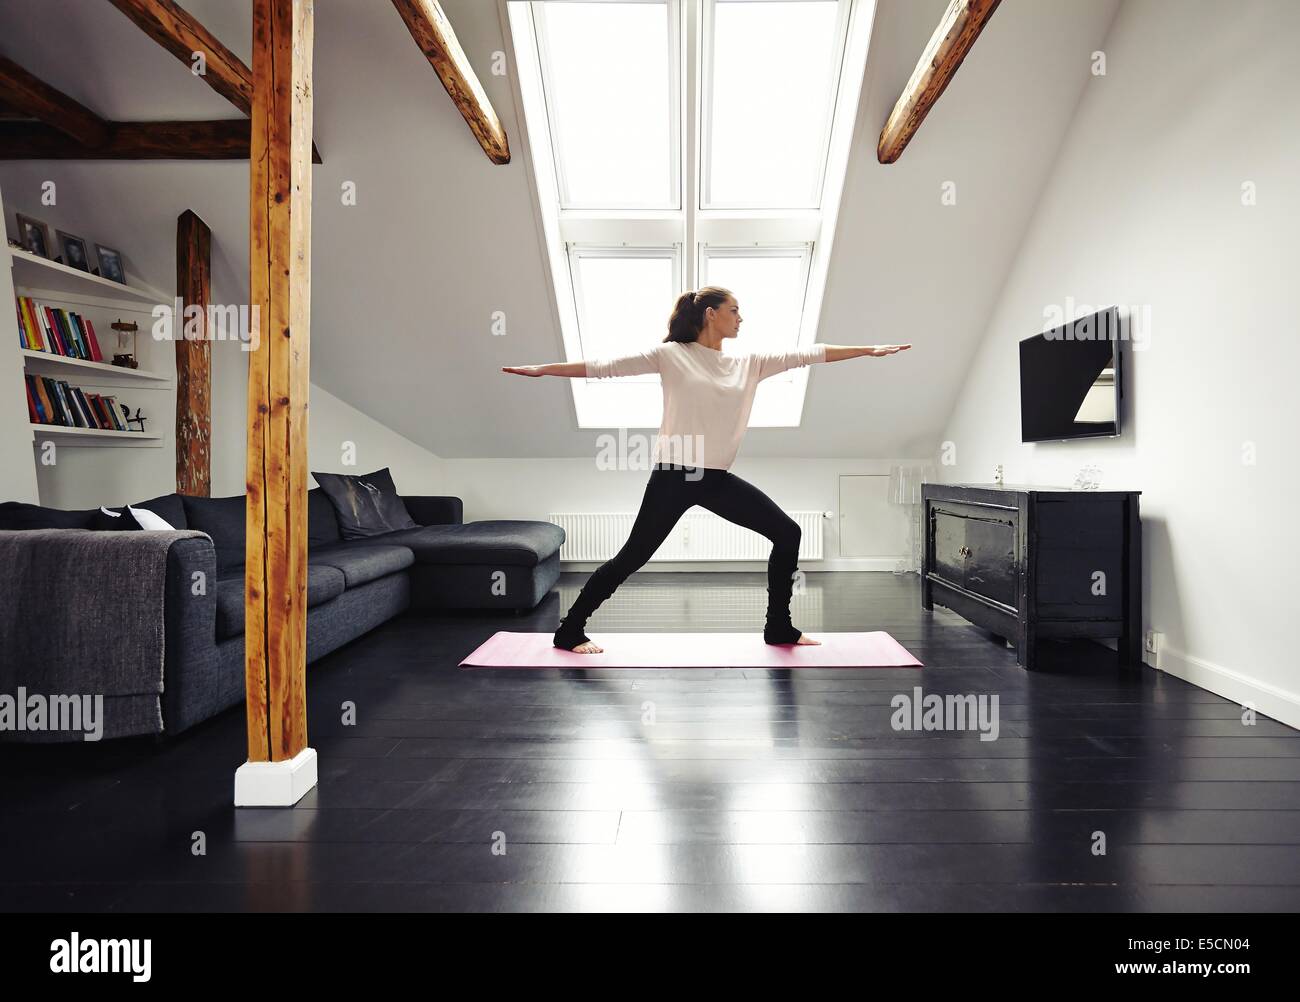 Image pleine longueur de fit woman on exercise mat avec bras tendus faisant du yoga dans la chambre d'amour. Modèle des femmes de race blanche Banque D'Images